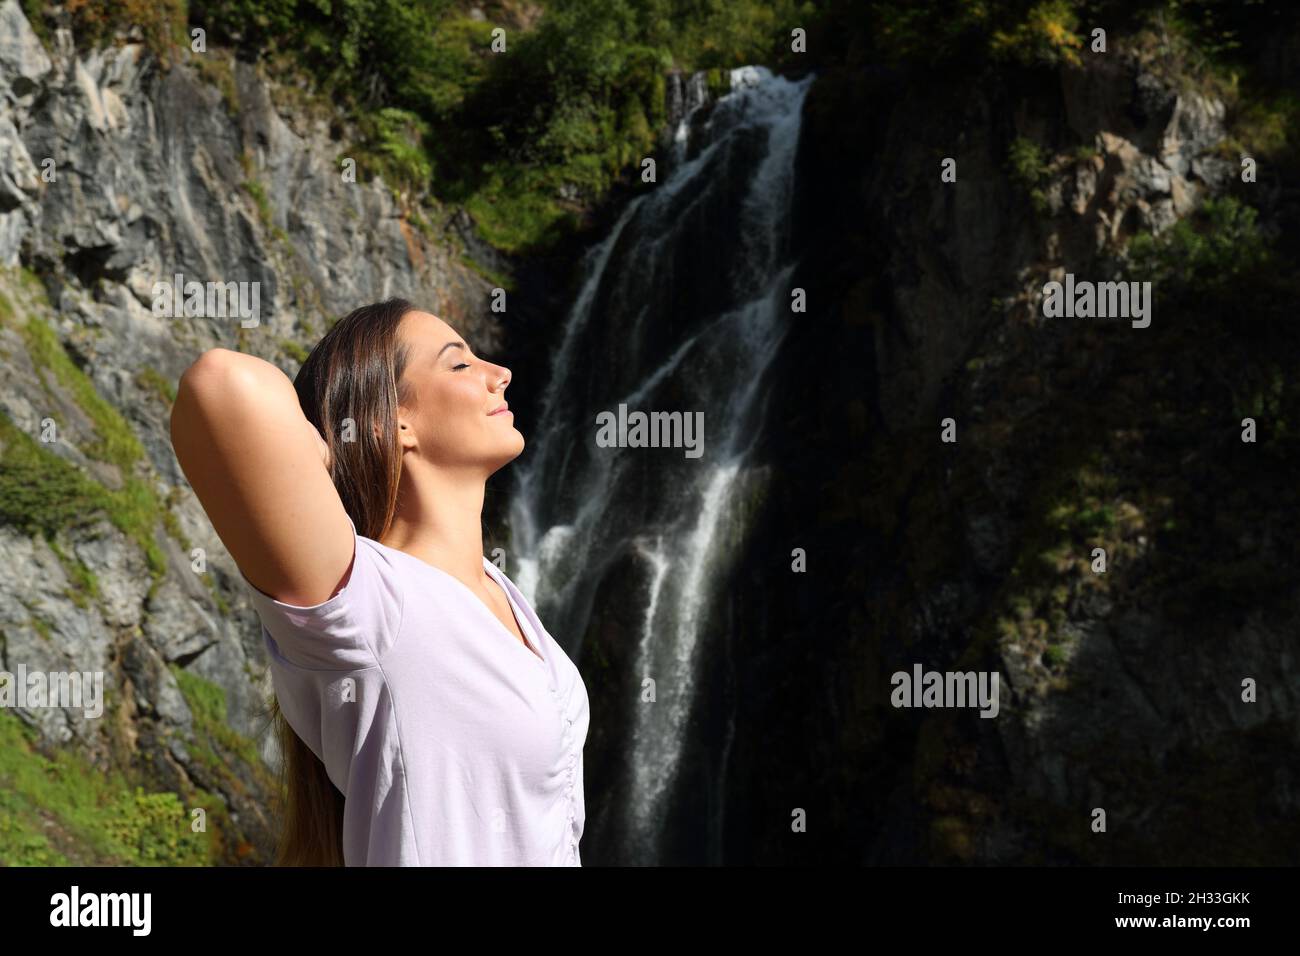 Vue latérale portrait d'une femme heureuse et détendue qui respire de l'air frais et se repose dans une chute d'eau Banque D'Images